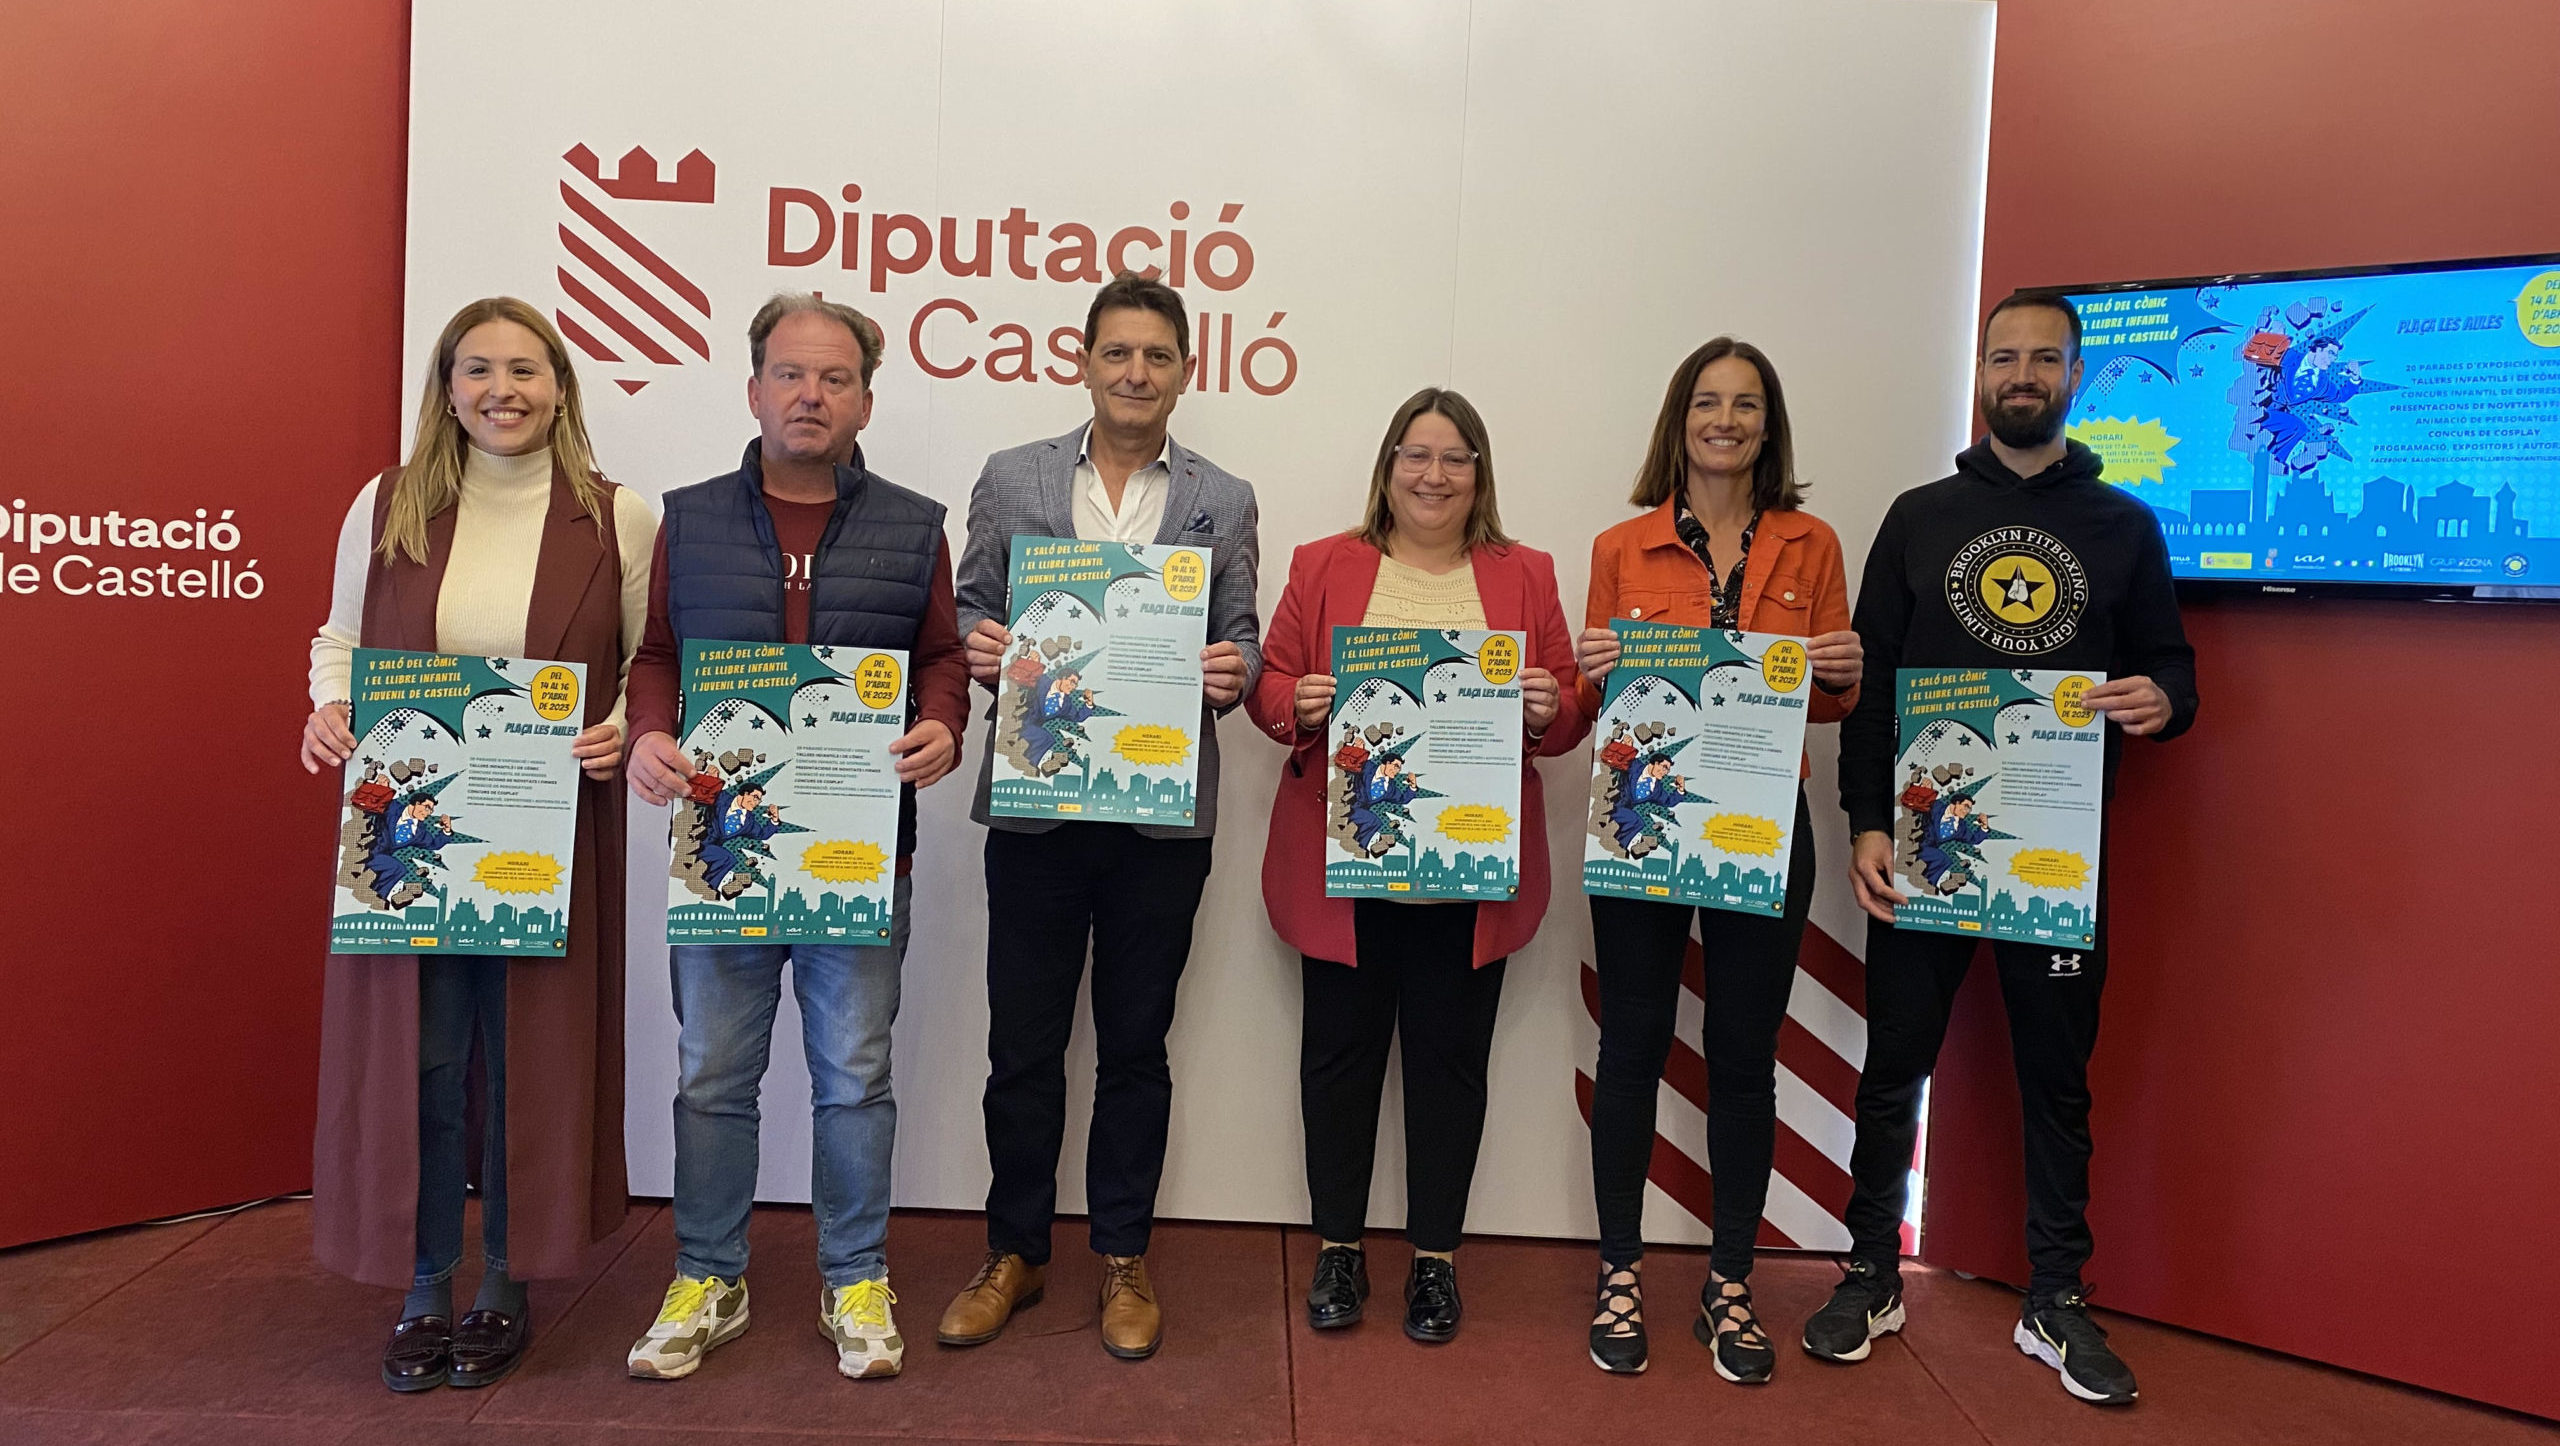 La Diputació recolza el V Saló del Còmic i el Llibre Infantil i Juvenil de Castelló. Del 14 al 16 d'abril